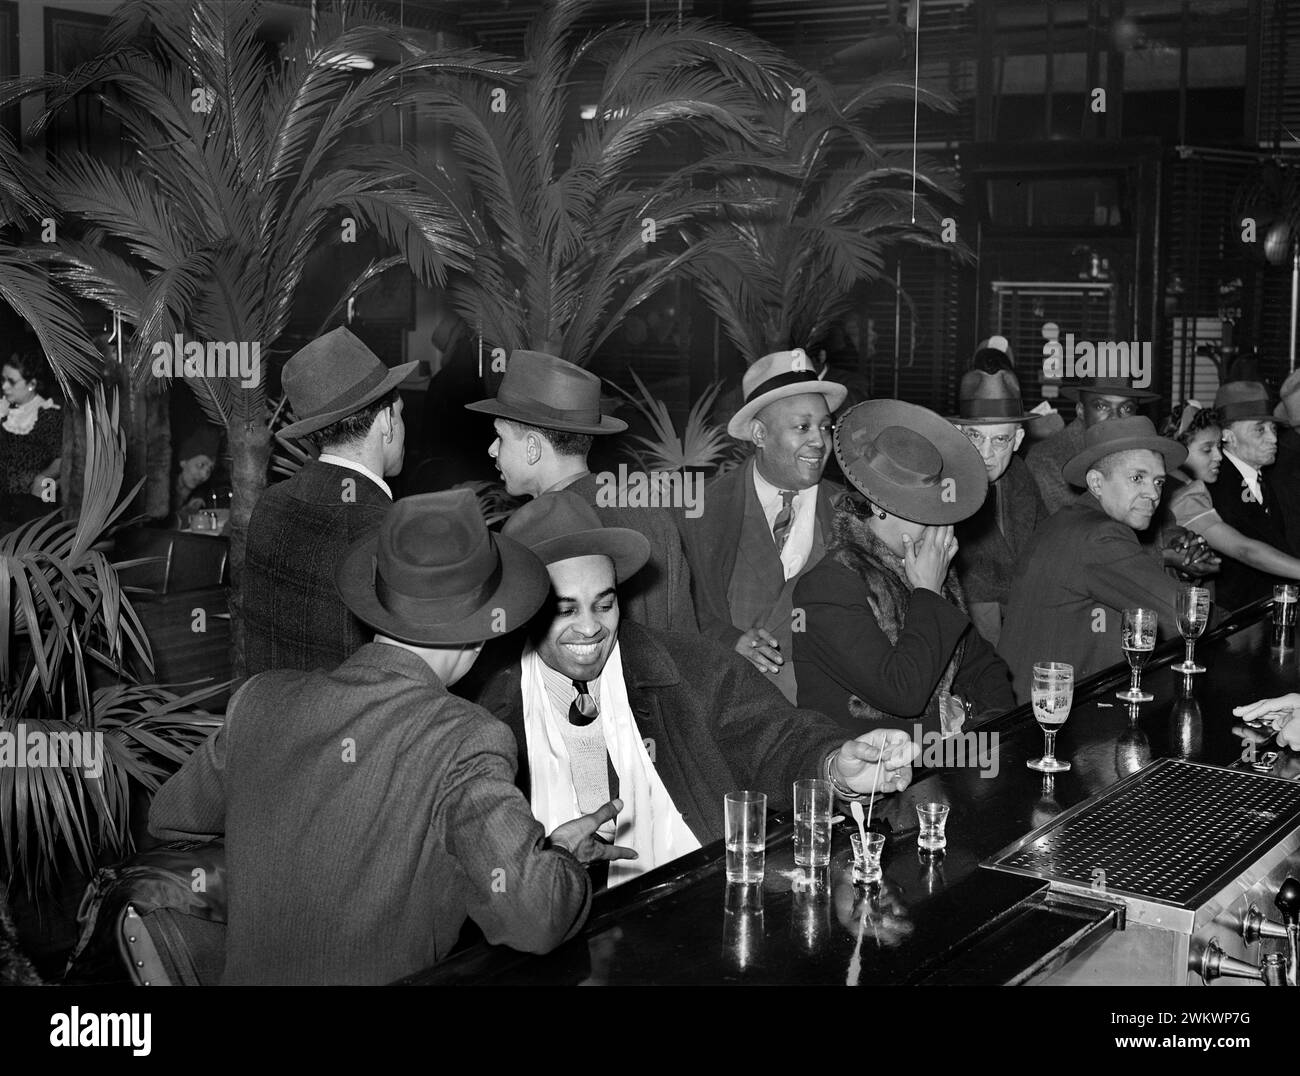 Groupe d'adultes au bar de Palm Tavern, Chicago, Illinois, États-Unis, Russell Lee, U.S. Farm Security Administration, avril 1941 Banque D'Images